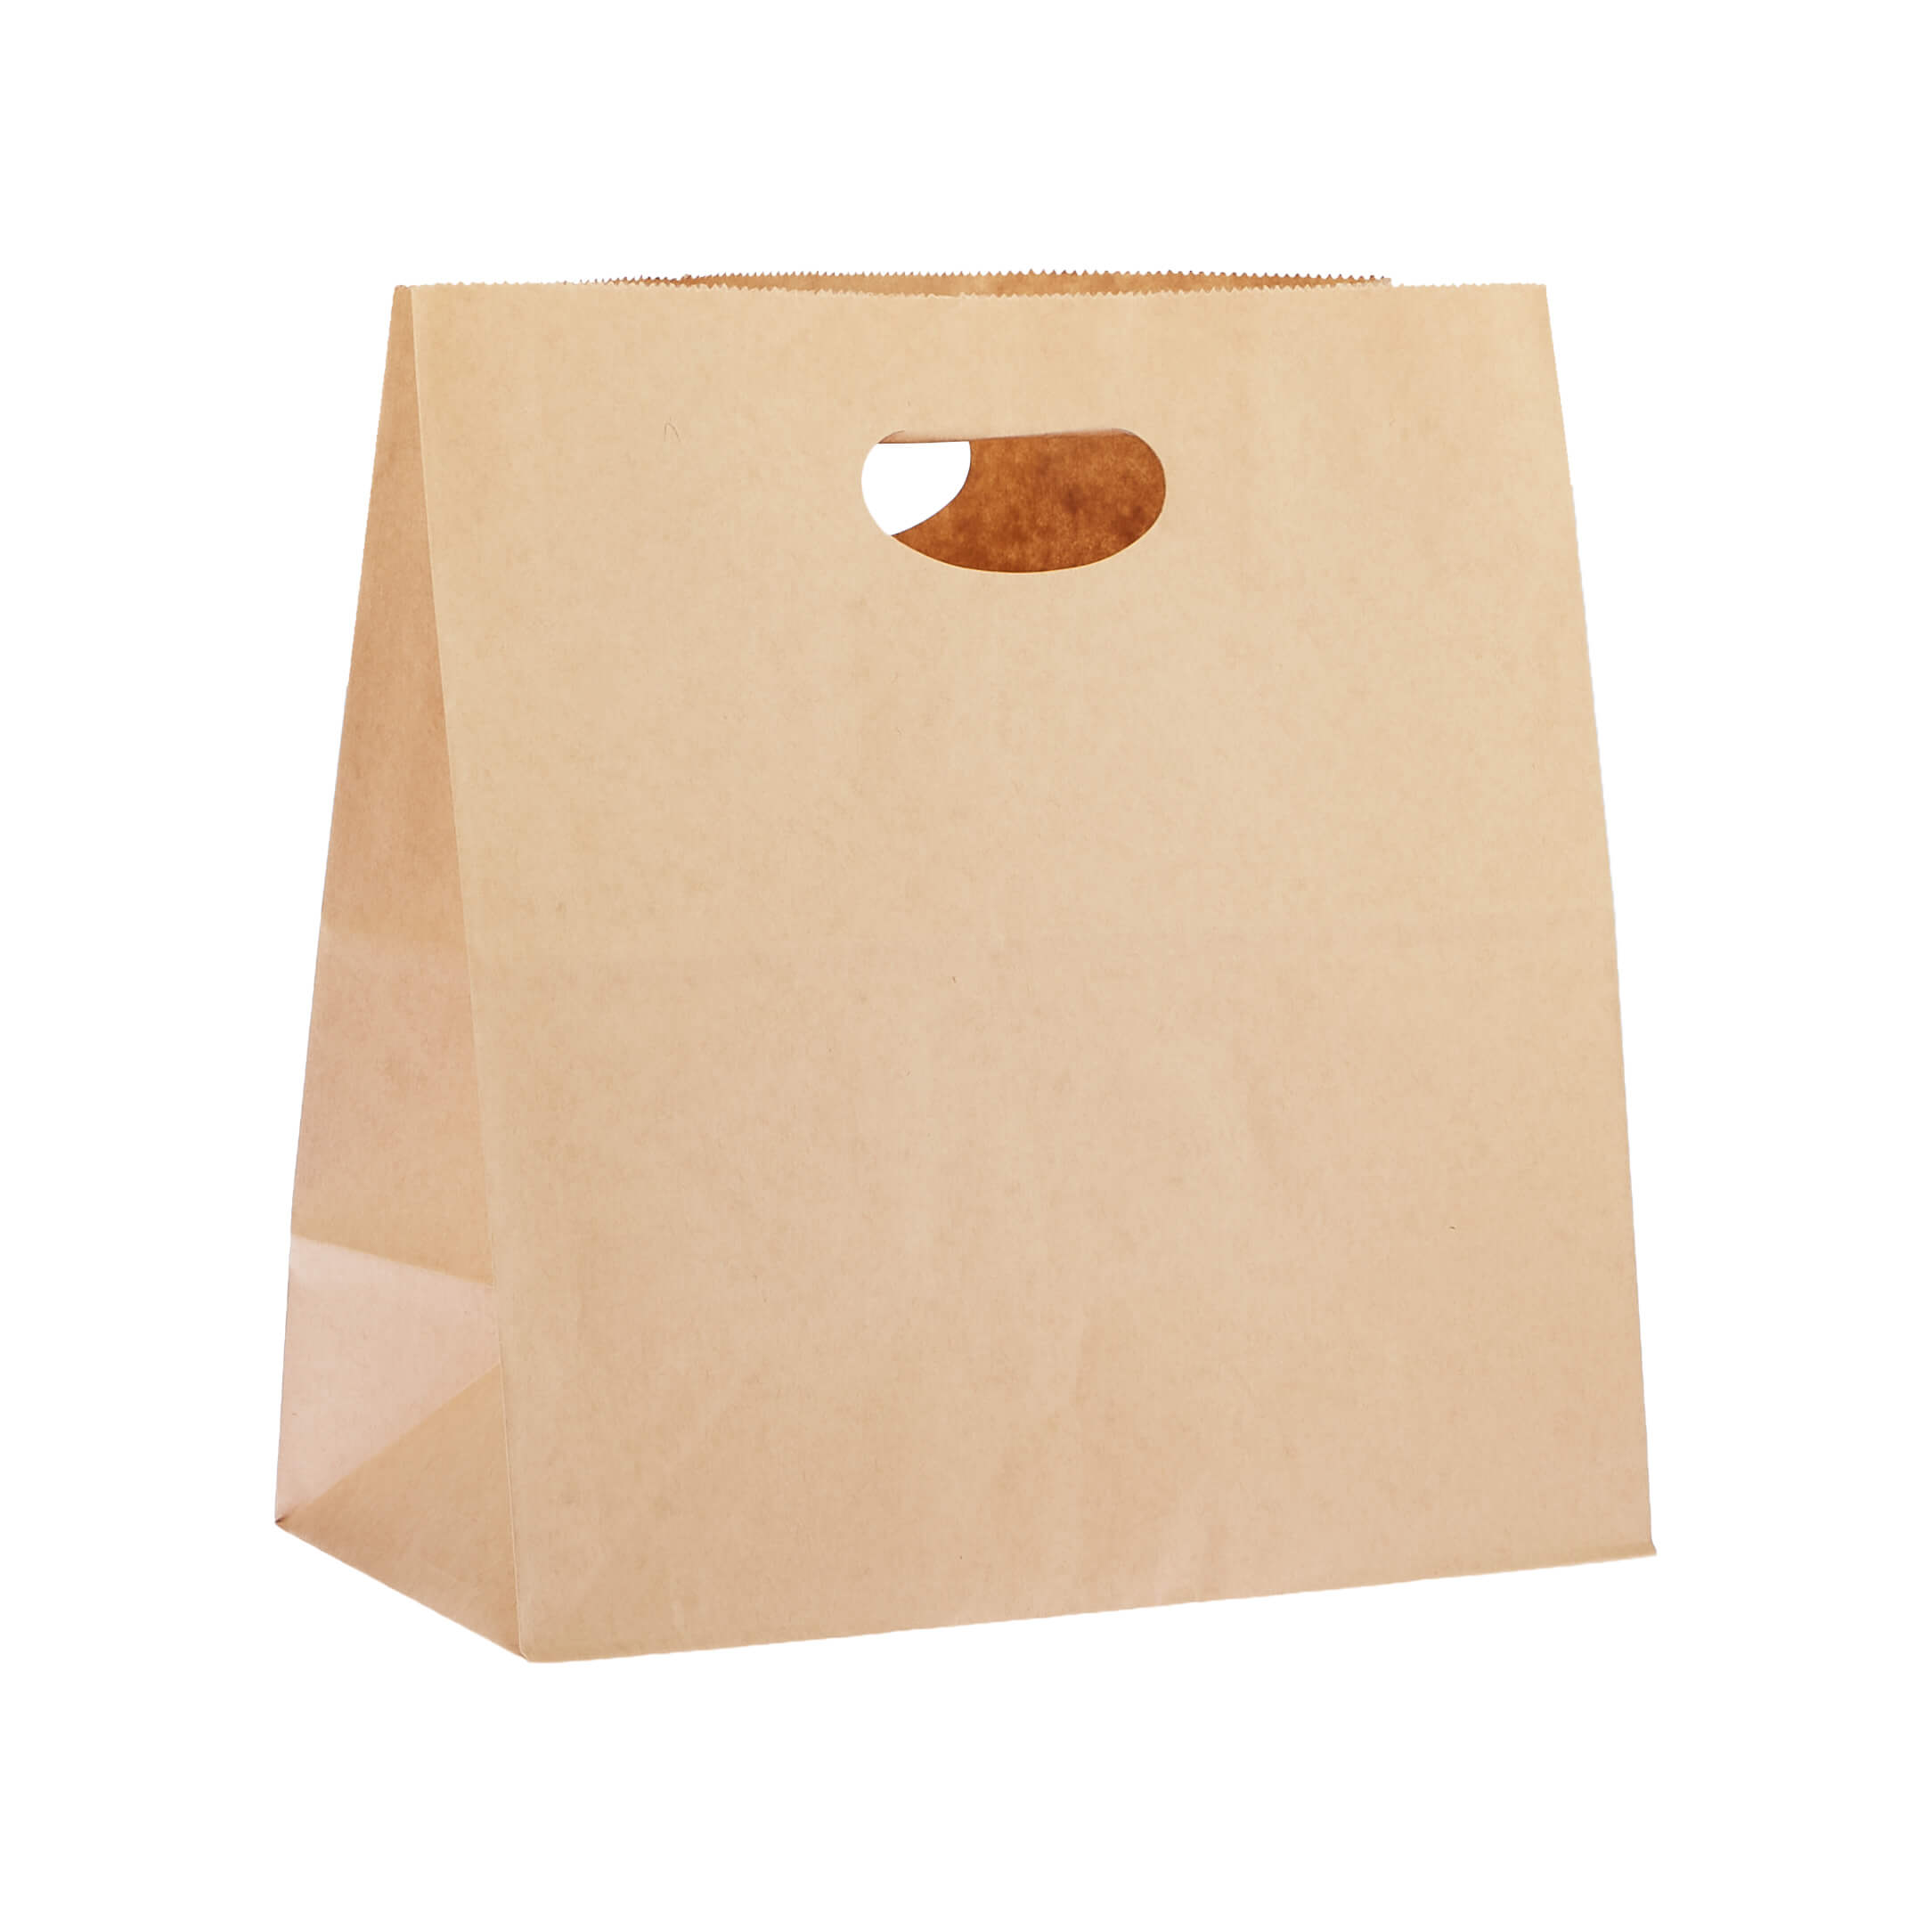 28 x 28 cm 500 Pieces Kraft Paper Bag Die Cut Handle - Hotpack Global